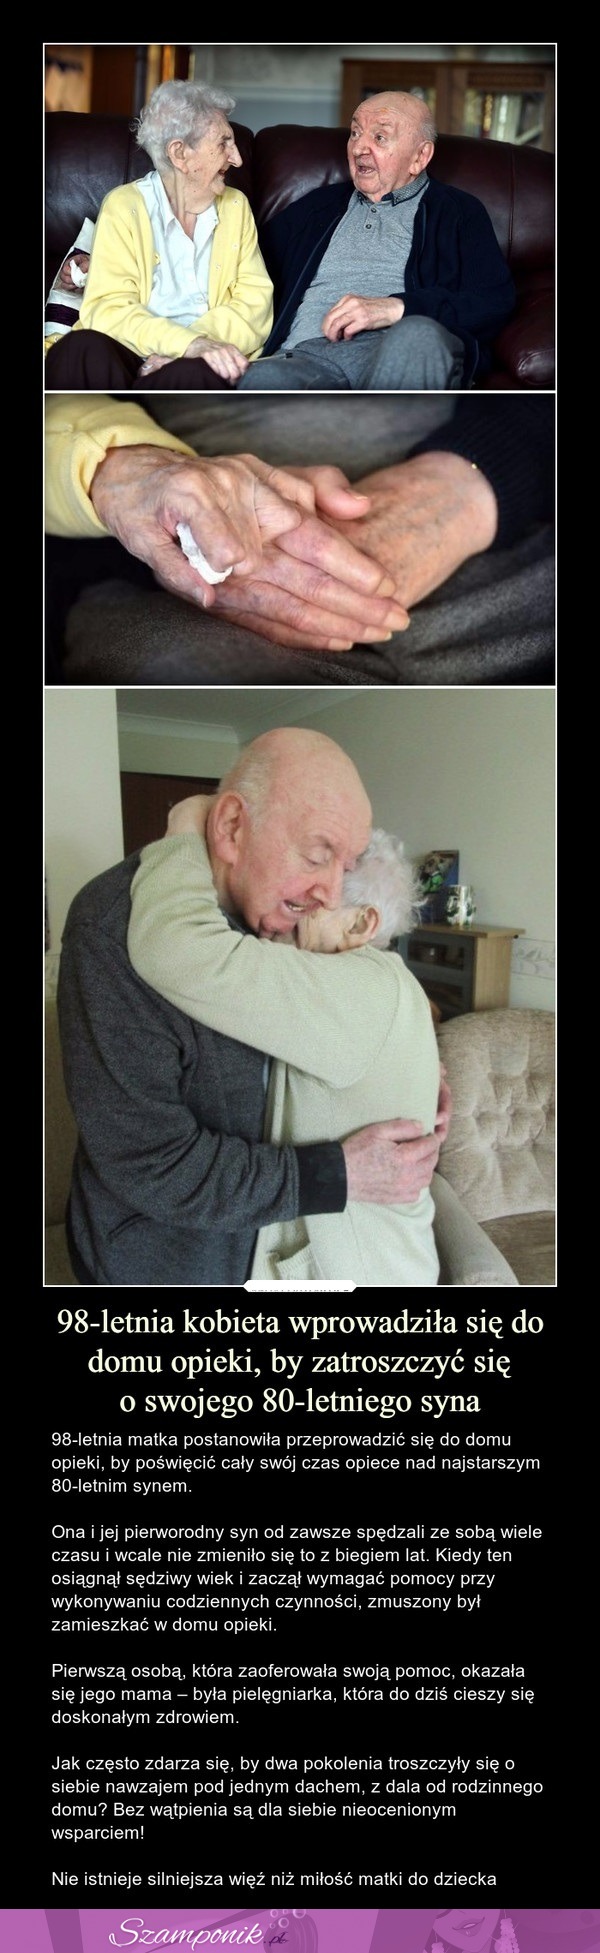 98-letnia kobieta wprowadziła się do domu opieki, by zatroszczyć się o swojego 80-letniego syna!